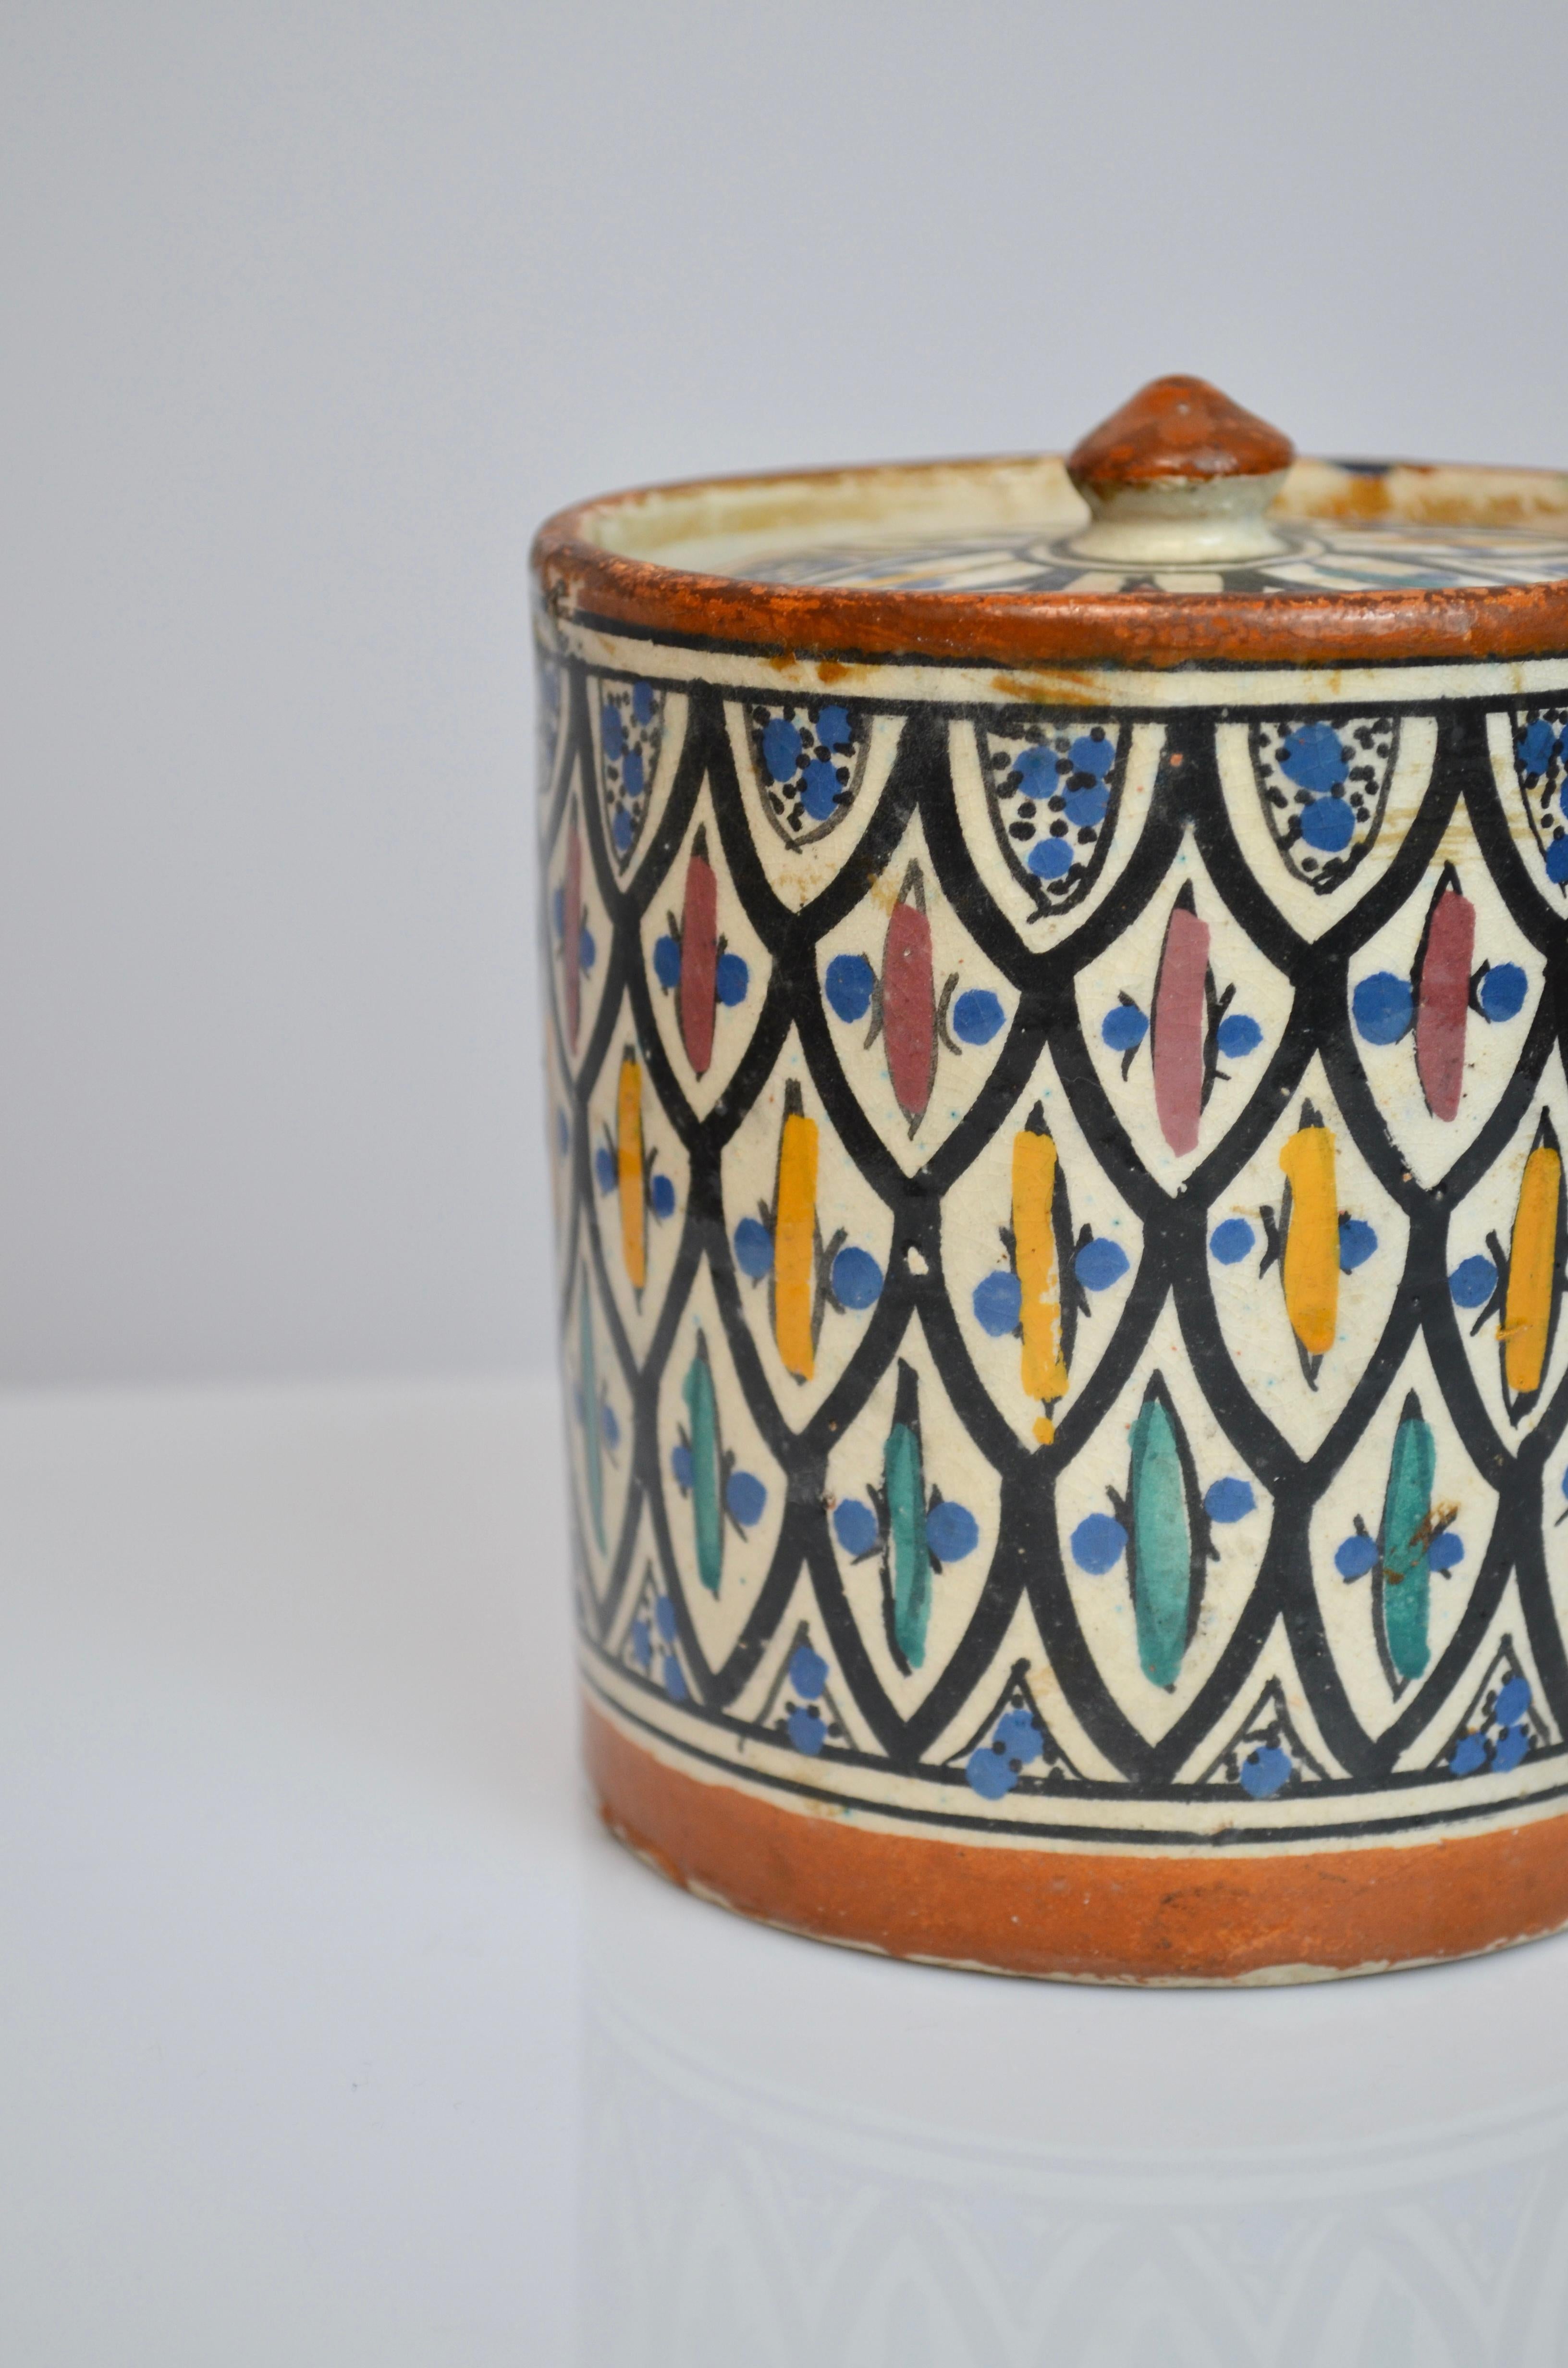 Keramiktopf mit Deckel, Marokko - Safi, 30er/40er Jahre
Signiert auf der Unterseite